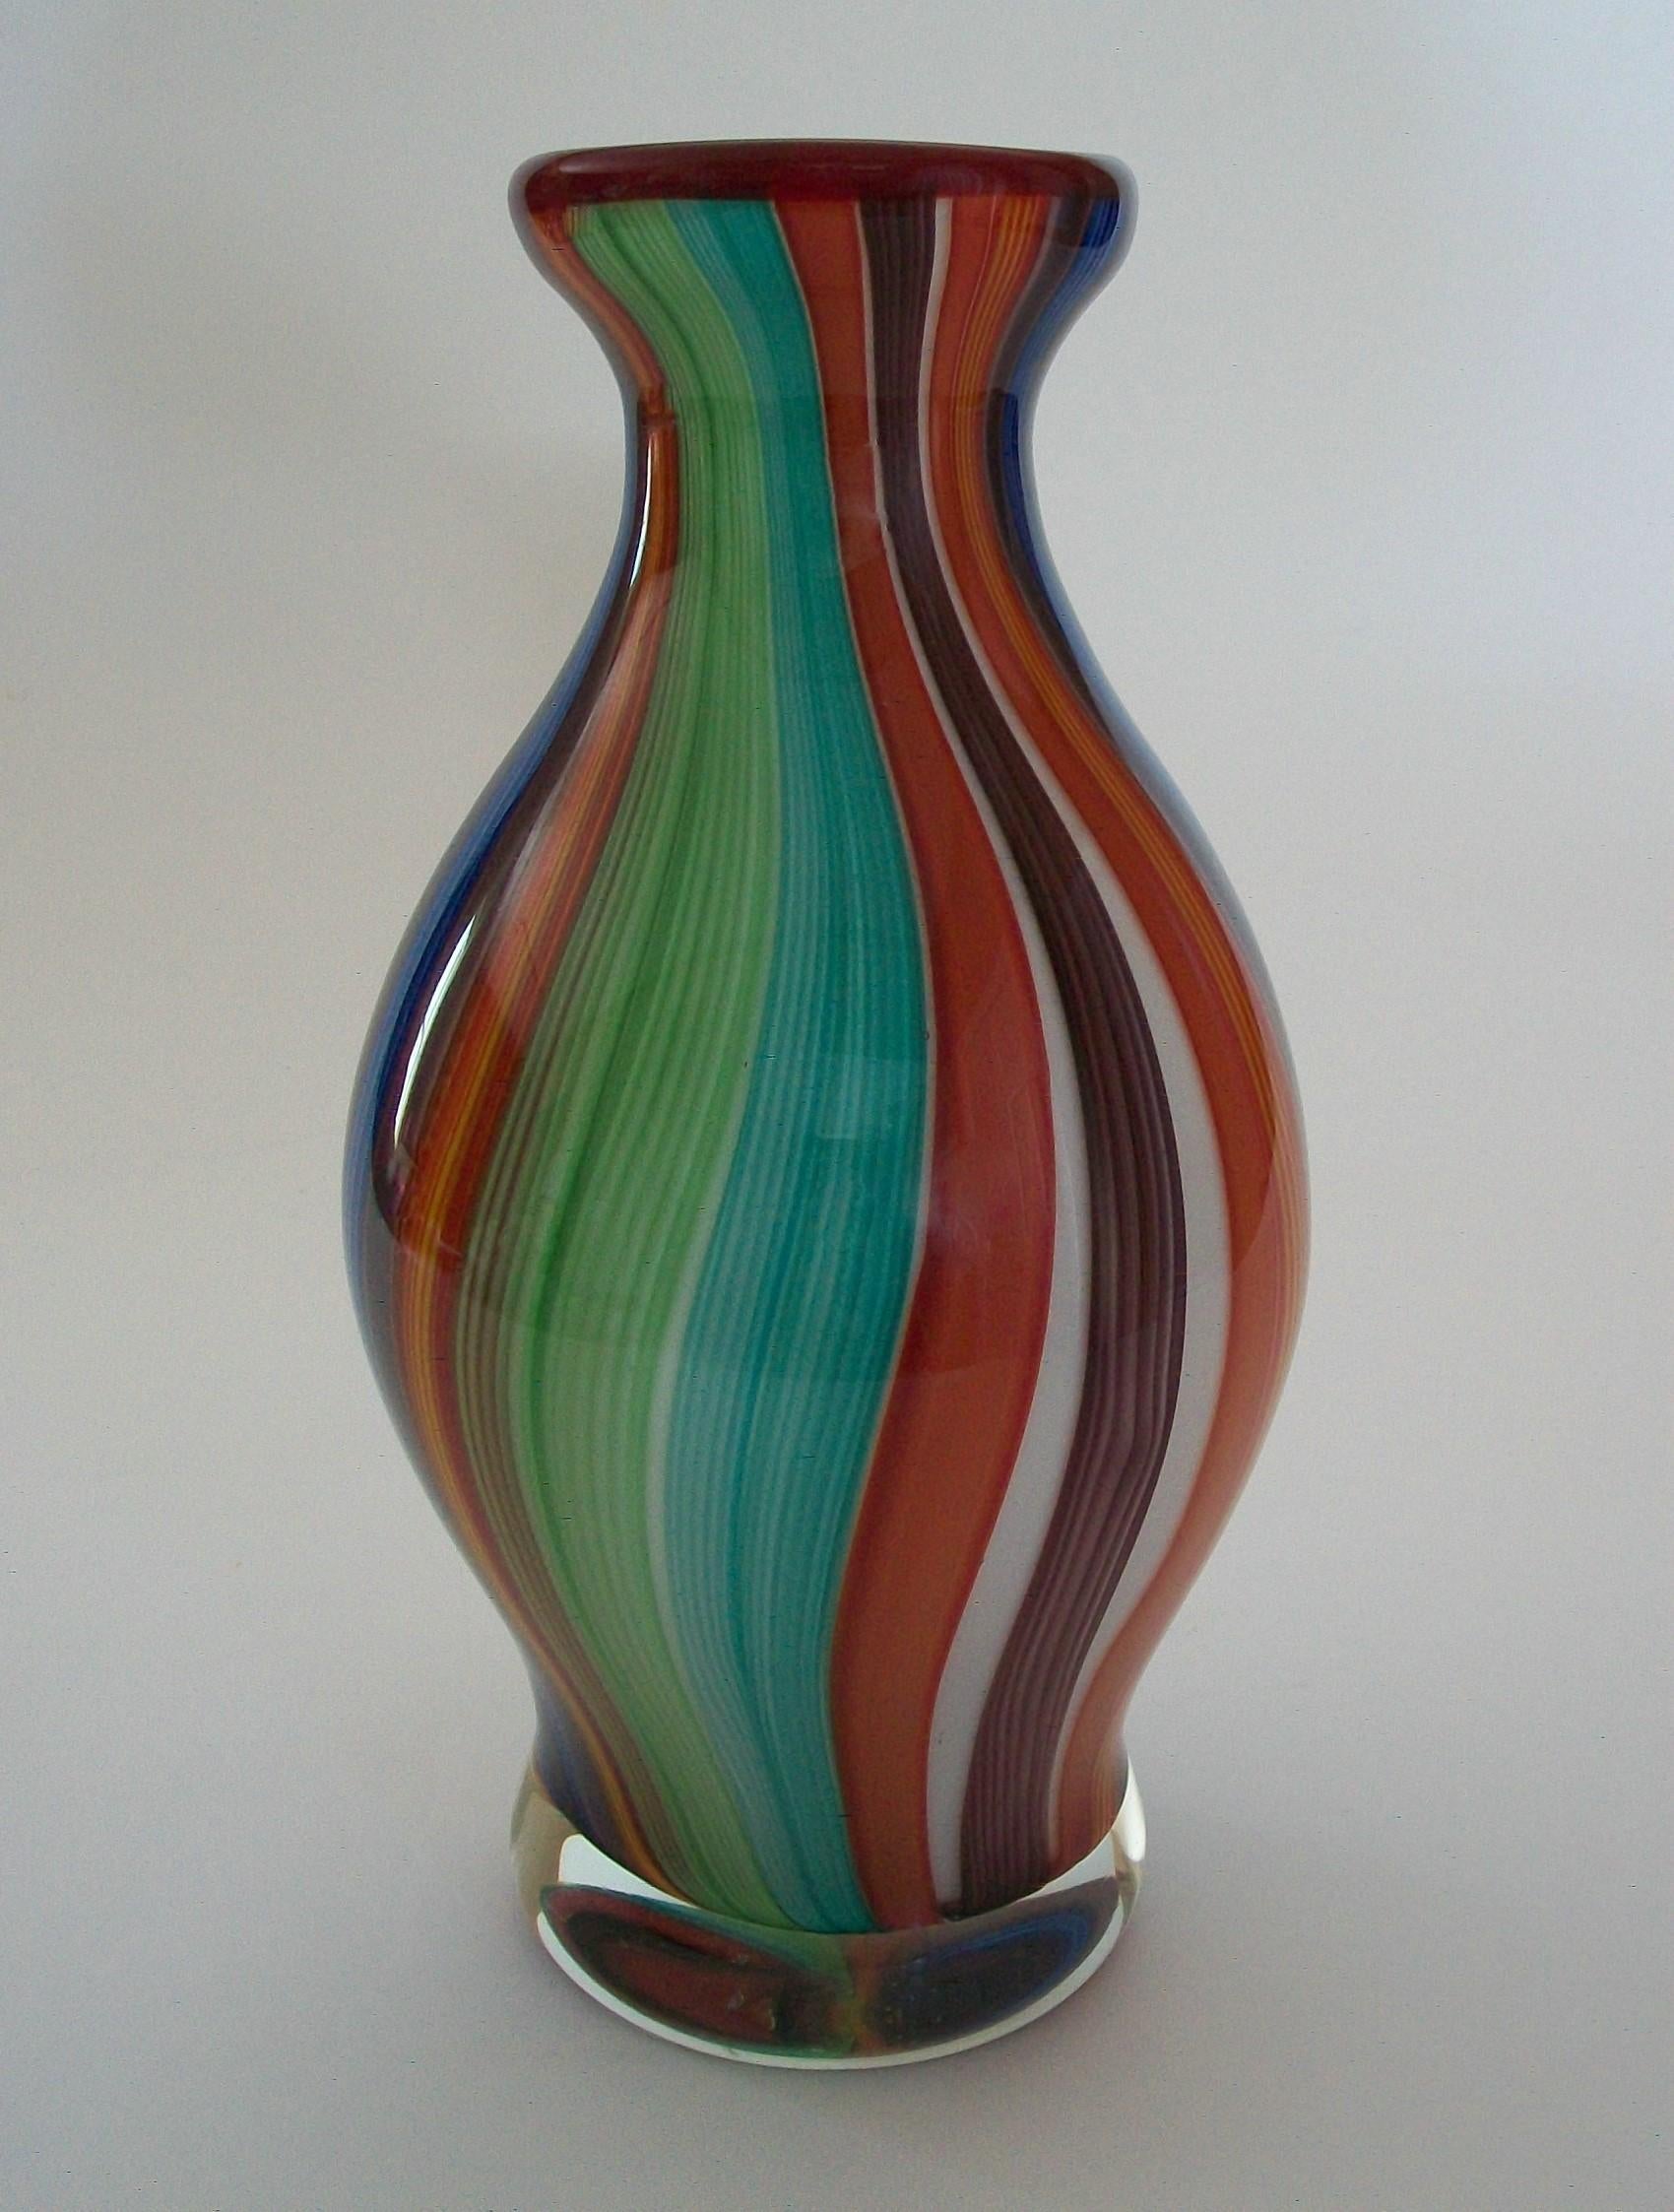 Große Vase aus mehrfarbigem Murano-Glas - innen weißes Glas mit rotem Rand - außen und am Boden klares Glas - unsigniert - Italien - Ende 20.

Ausgezeichneter Vintage-Zustand - kein Verlust - keine Beschädigung - keine Restaurierung - Kratzer an der